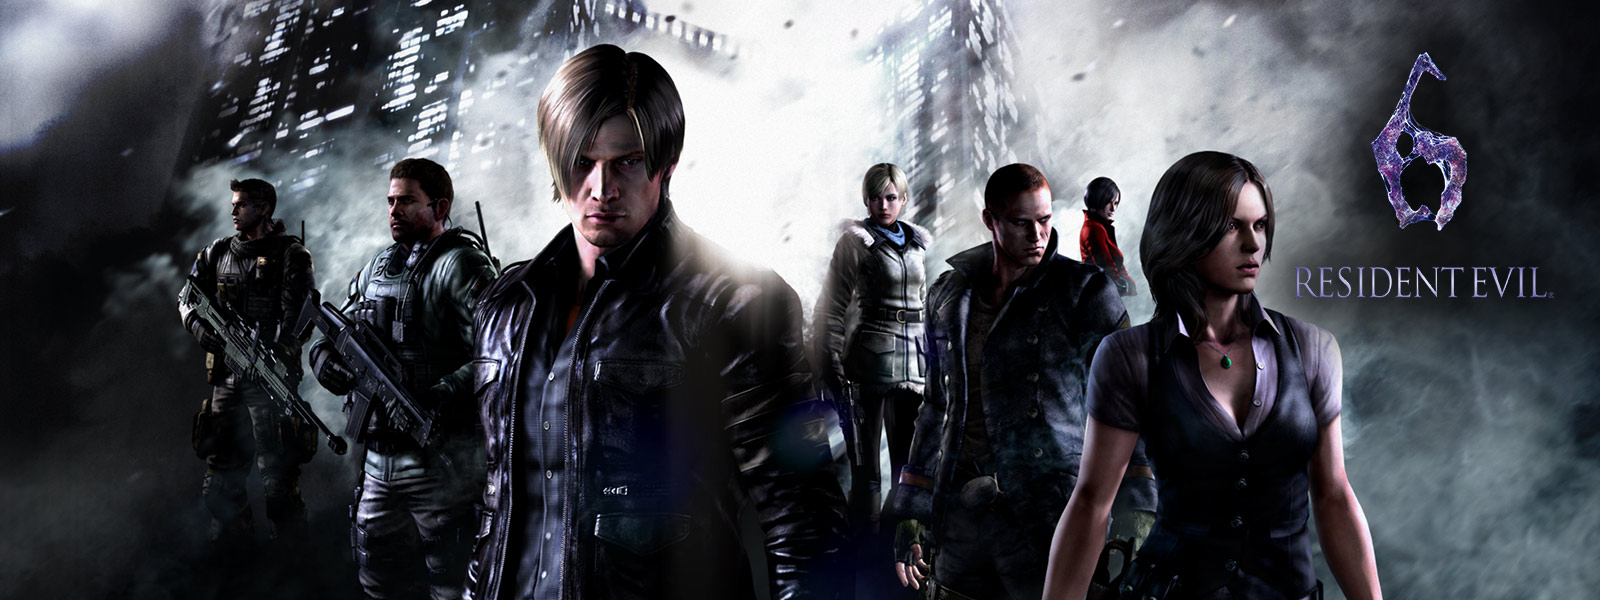 Resident Evil 6, todos los personajes de Resident Evil parados delante de amenazantes rascacielos